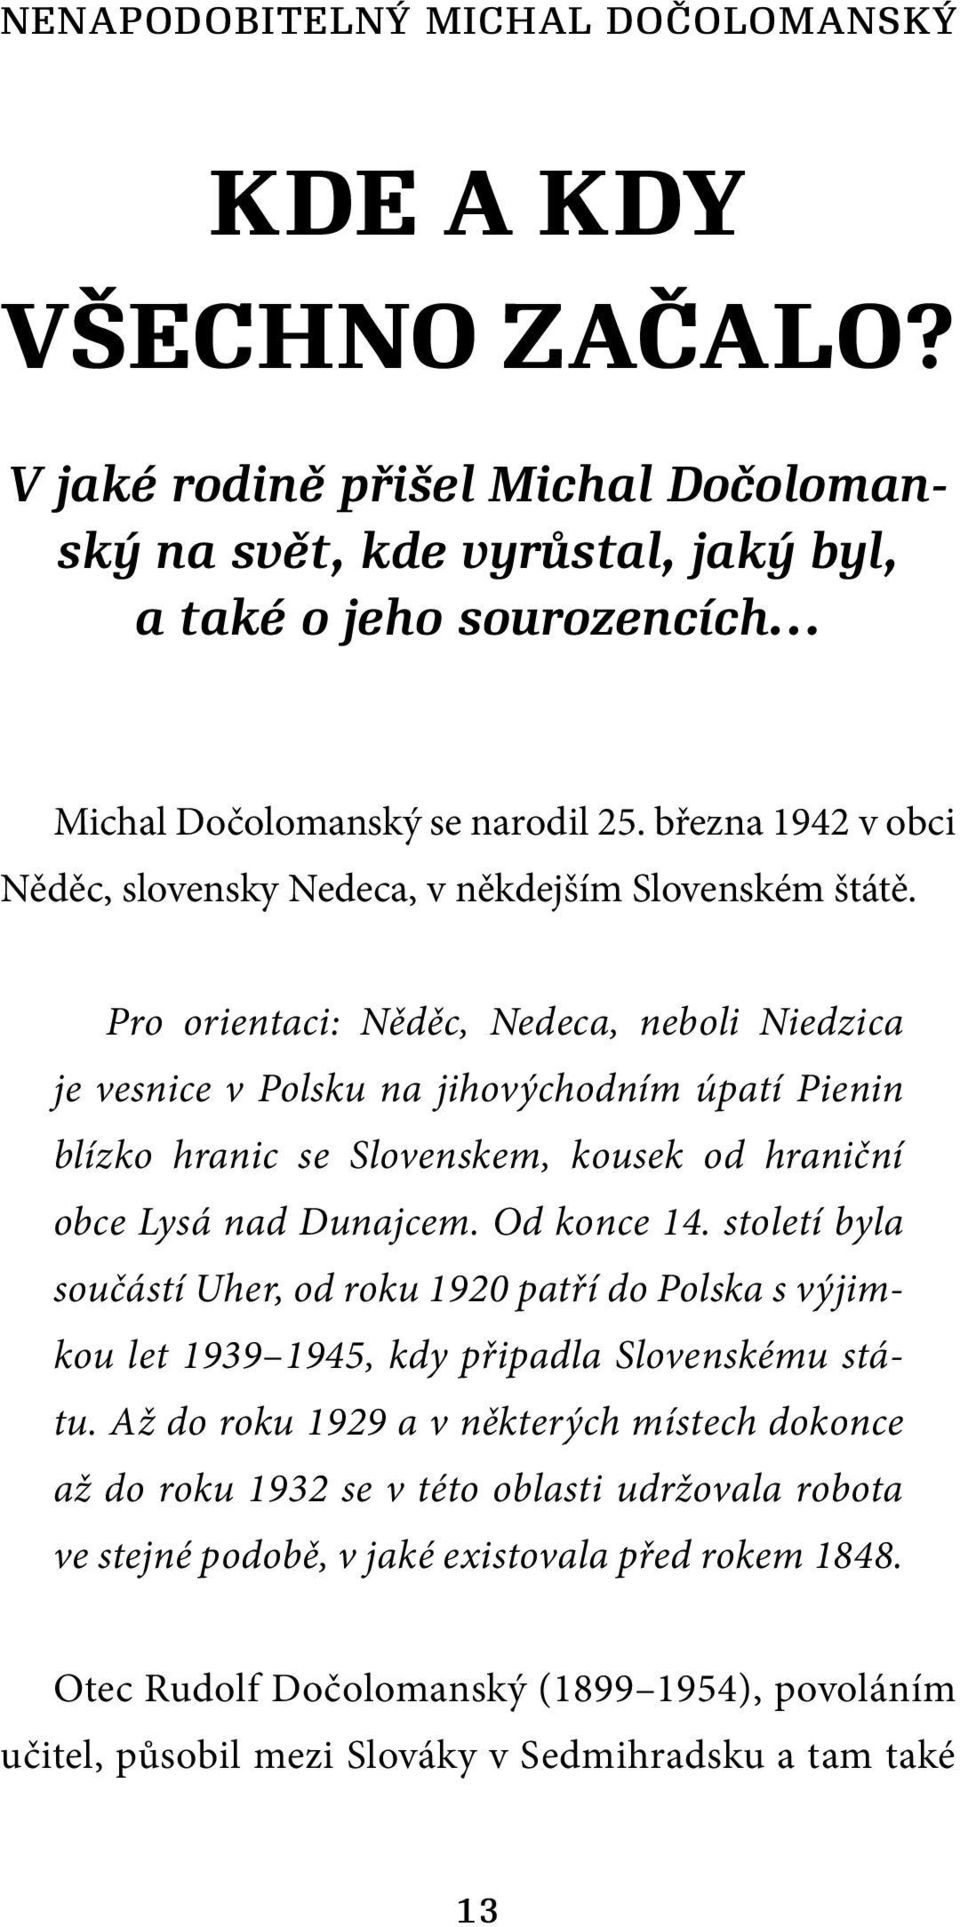 Pro orientaci: Něděc, Nedeca, neboli Niedzica je vesnice v Polsku na jihovýchodním úpatí Pienin blízko hranic se Slovenskem, kousek od hraniční obce Lysá nad Dunajcem. Od konce 14.